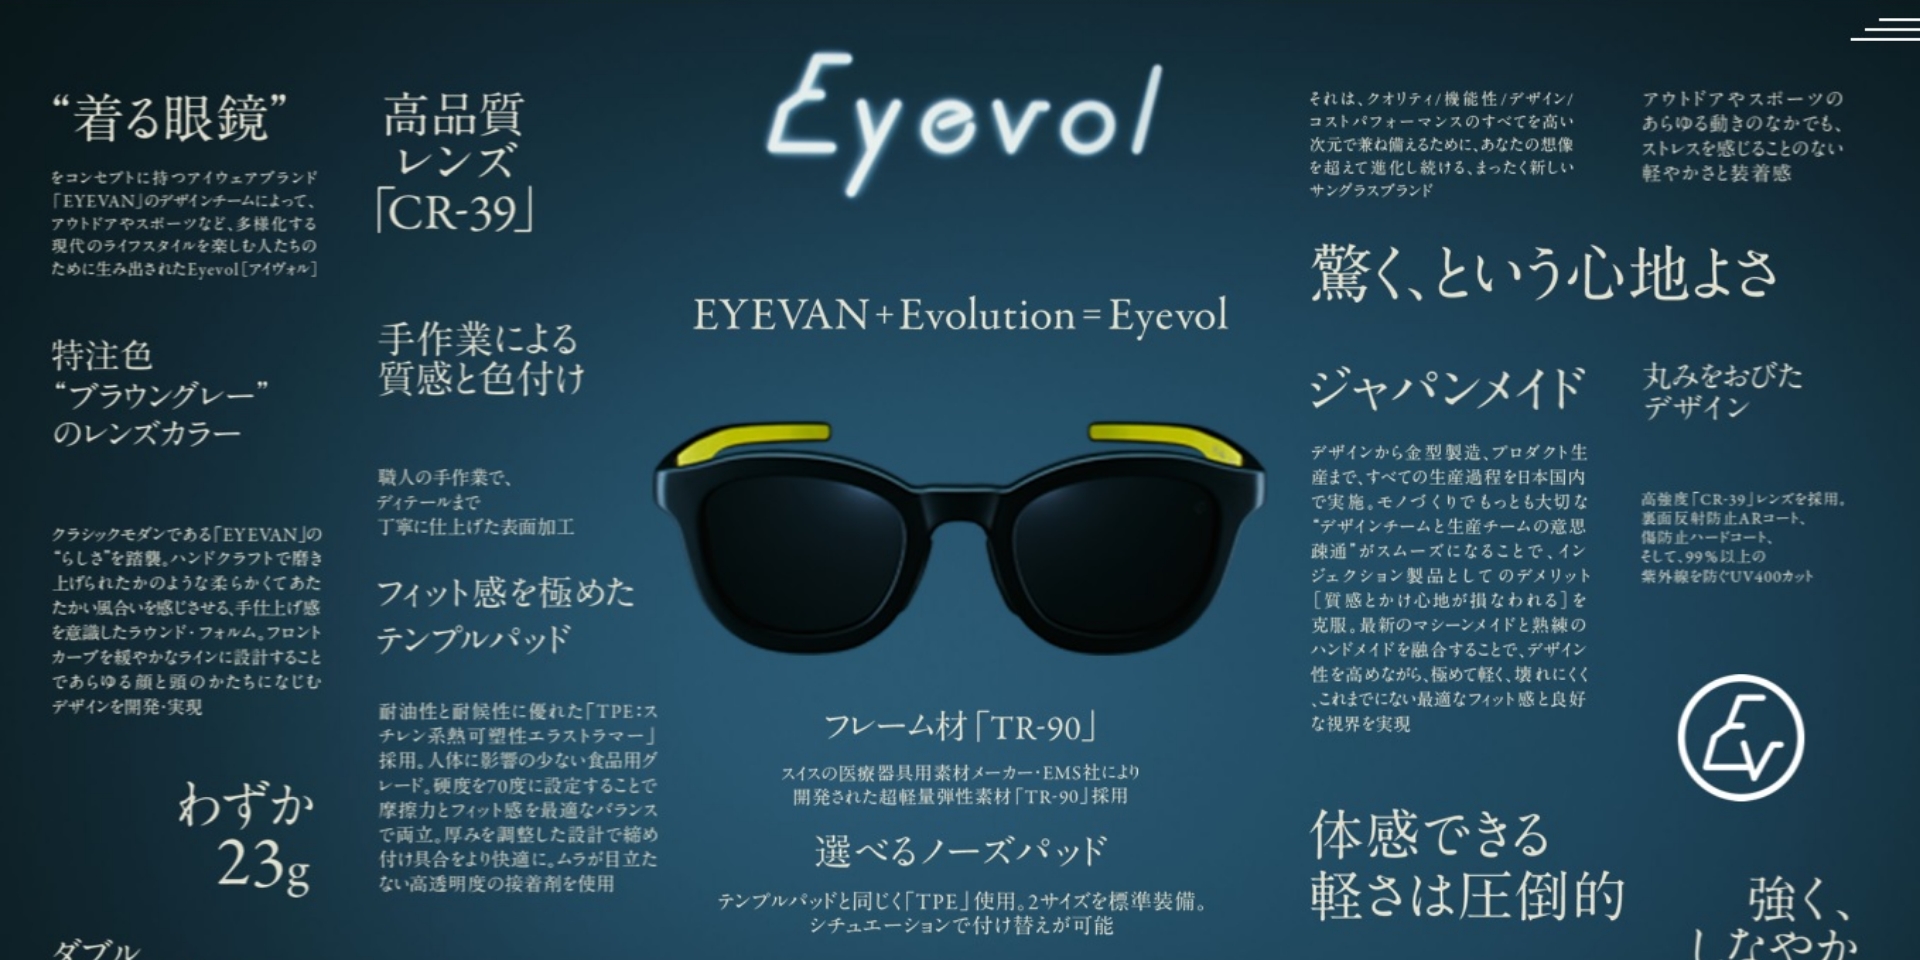 Eyevol